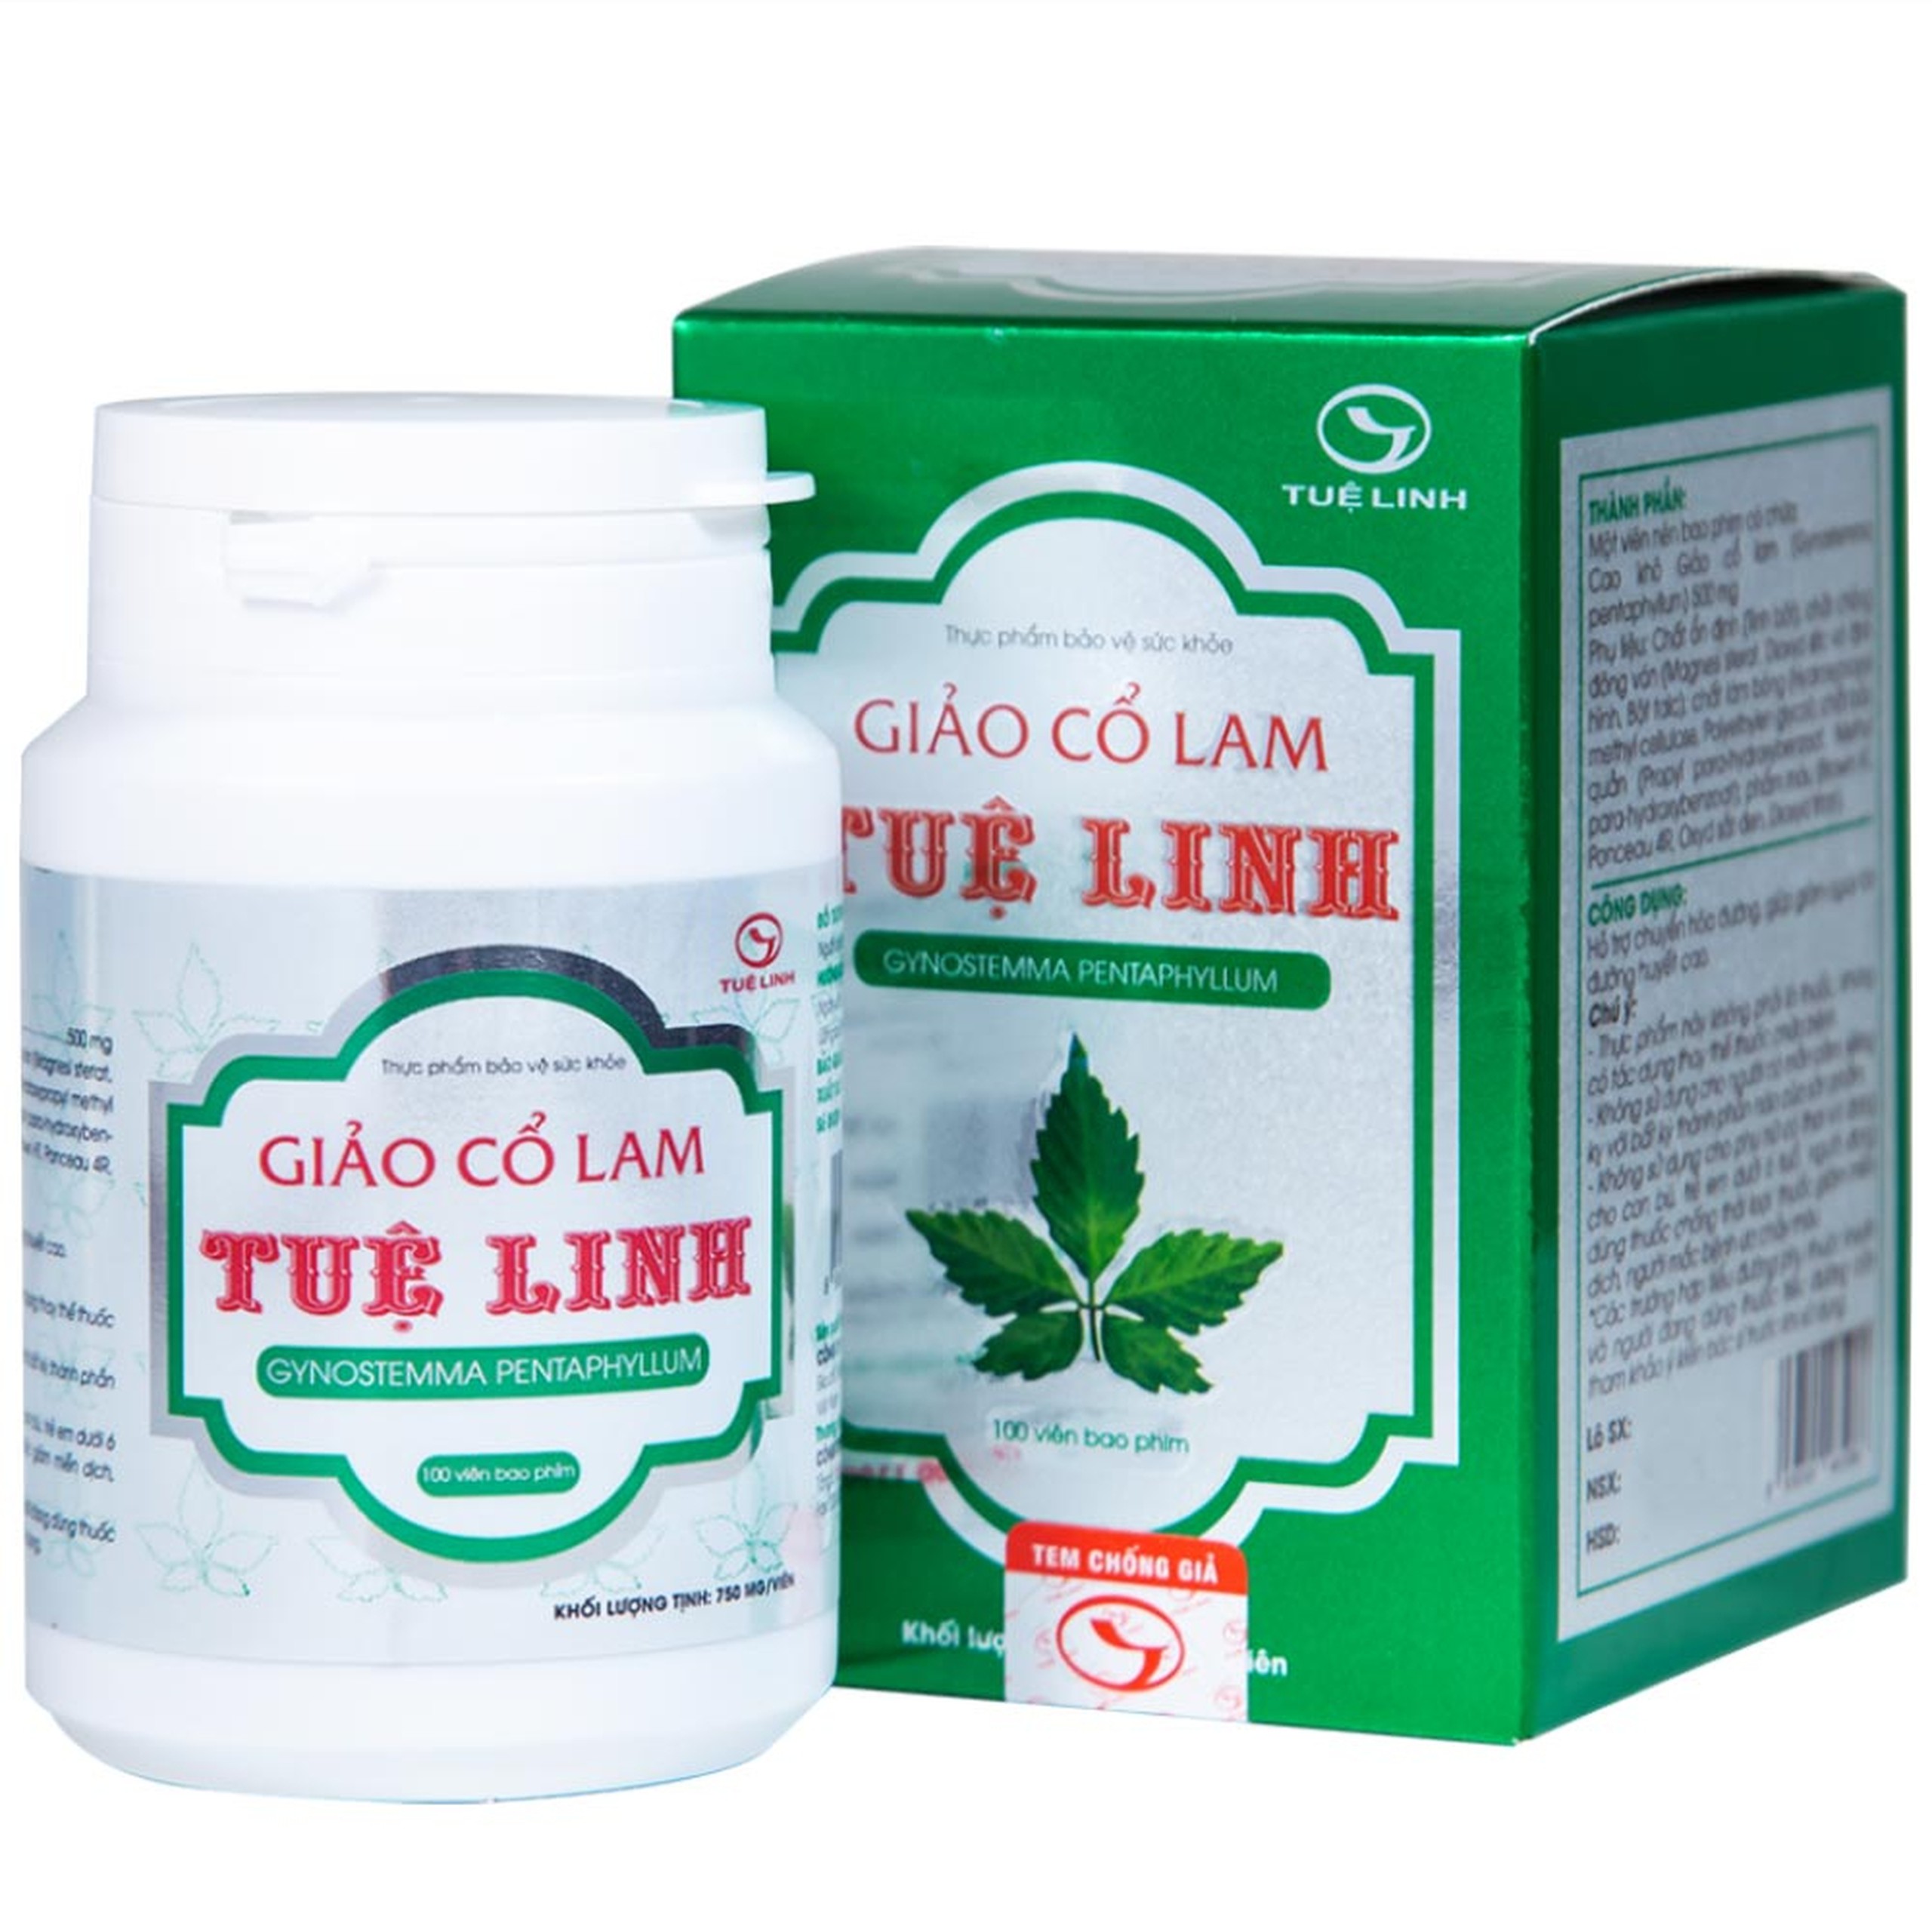 Viên uống Giảo Cổ Lam Tuệ Linh hỗ trợ chuyển hóa đường, giảm nguy cơ đường huyết cao (100 viên)